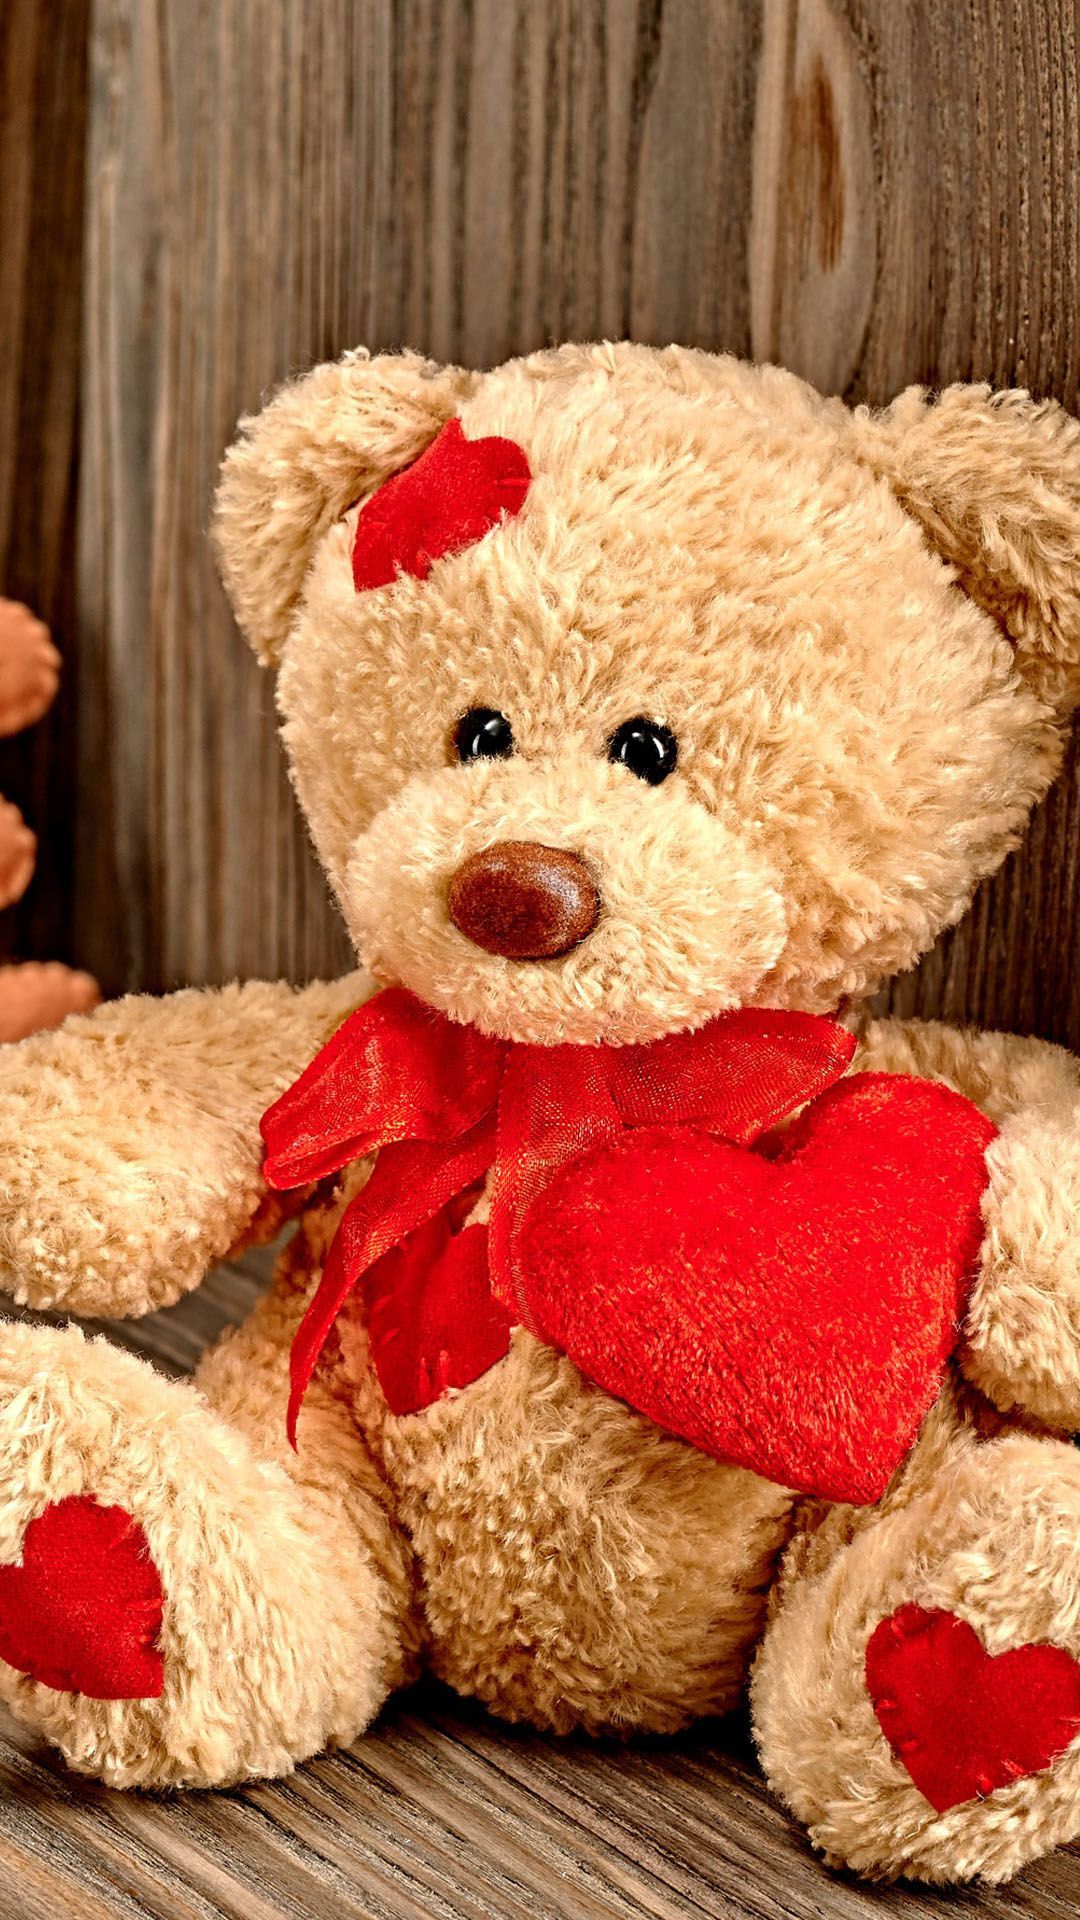 Teddy Bear Love iPhone 6 y 6 Plus HD Fondos de pantalla | Diario iPhone 6/5